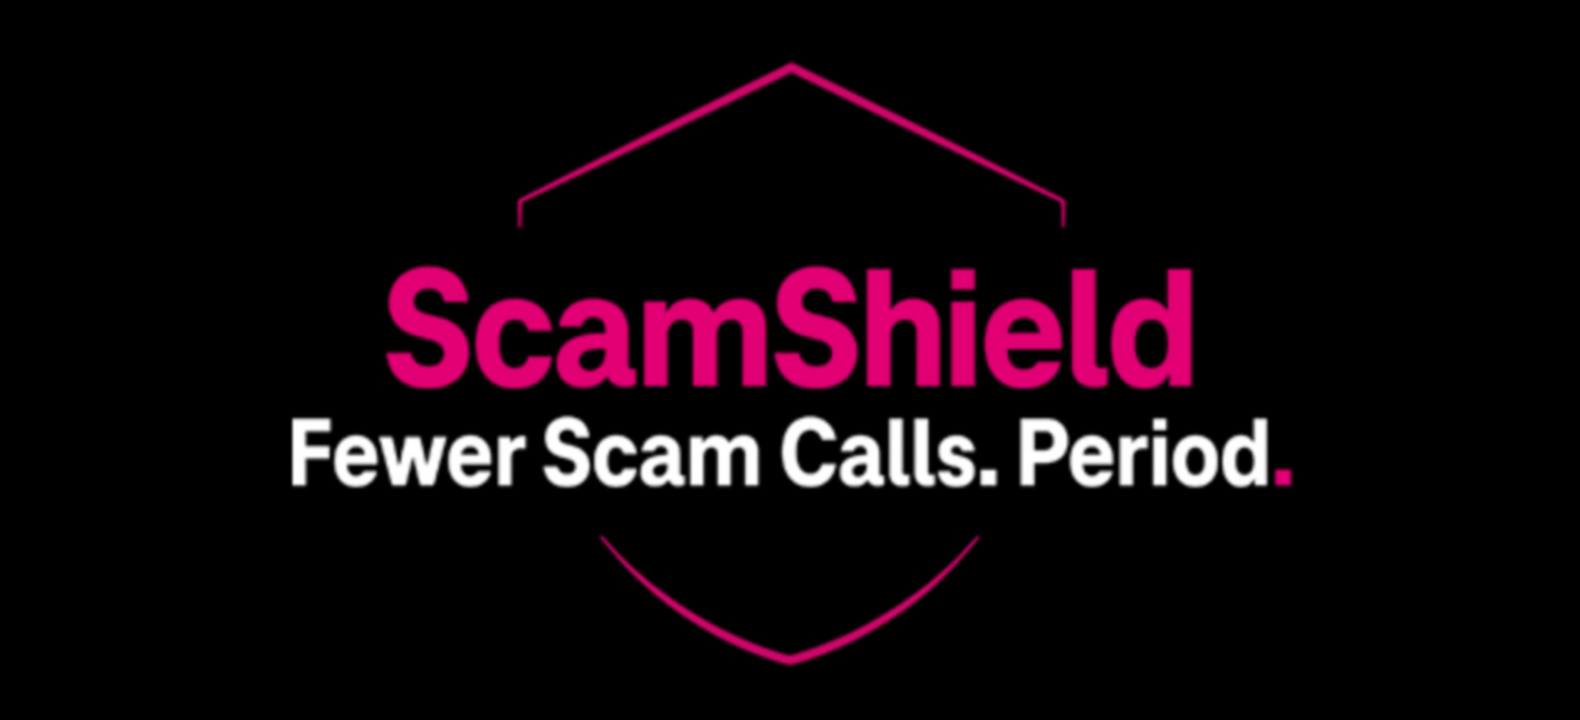 Scam Shield. Fewer Scam Calls. Period.